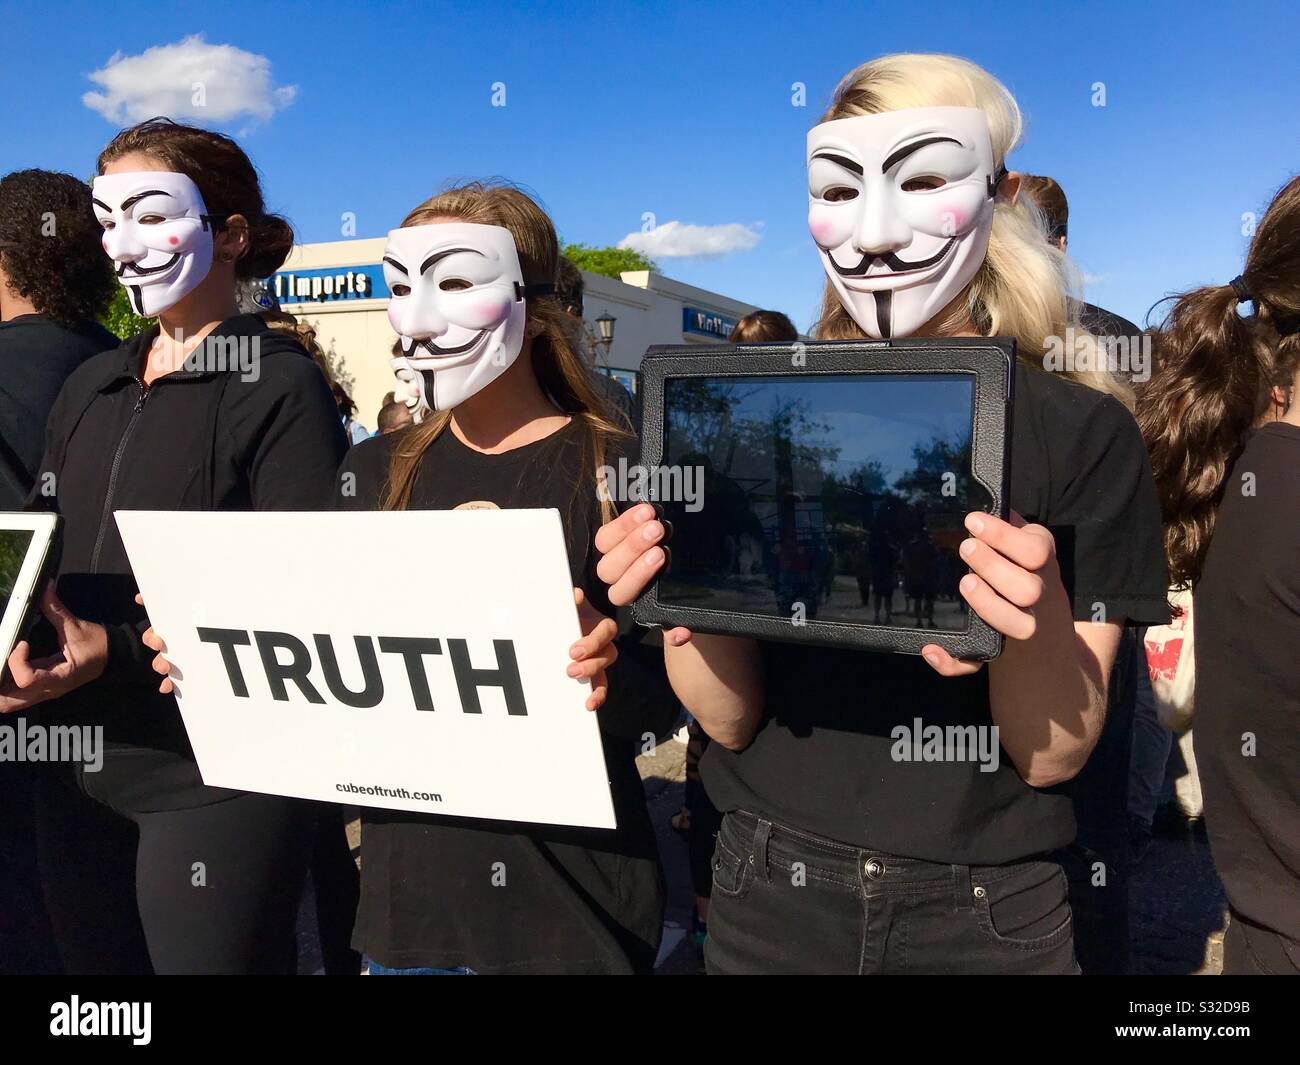 Anonyme junge Frauen Demonstranten mit Masken demonstrieren für Tierrechte. St. Paul, Minnesota/USA. Juni 2018. Man hält ein Zeichen, das "Wahrheit" sagt. Stockfoto